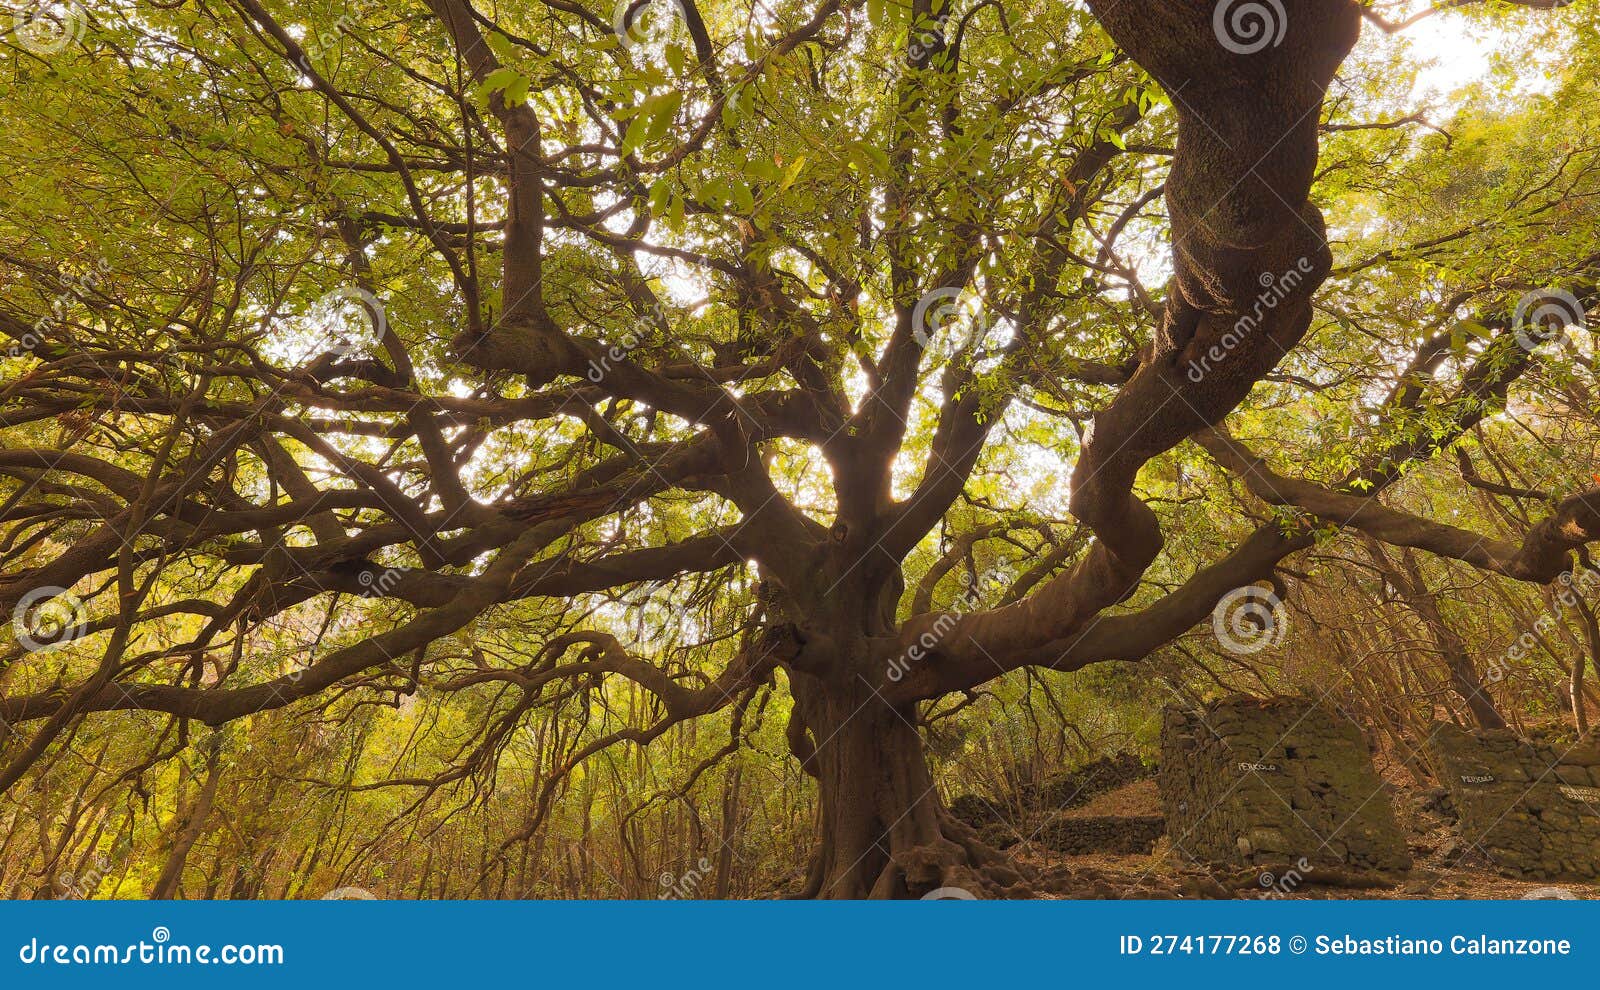 ilice albero secolare- ilice di carrinu sul vulcano etna in sicilia